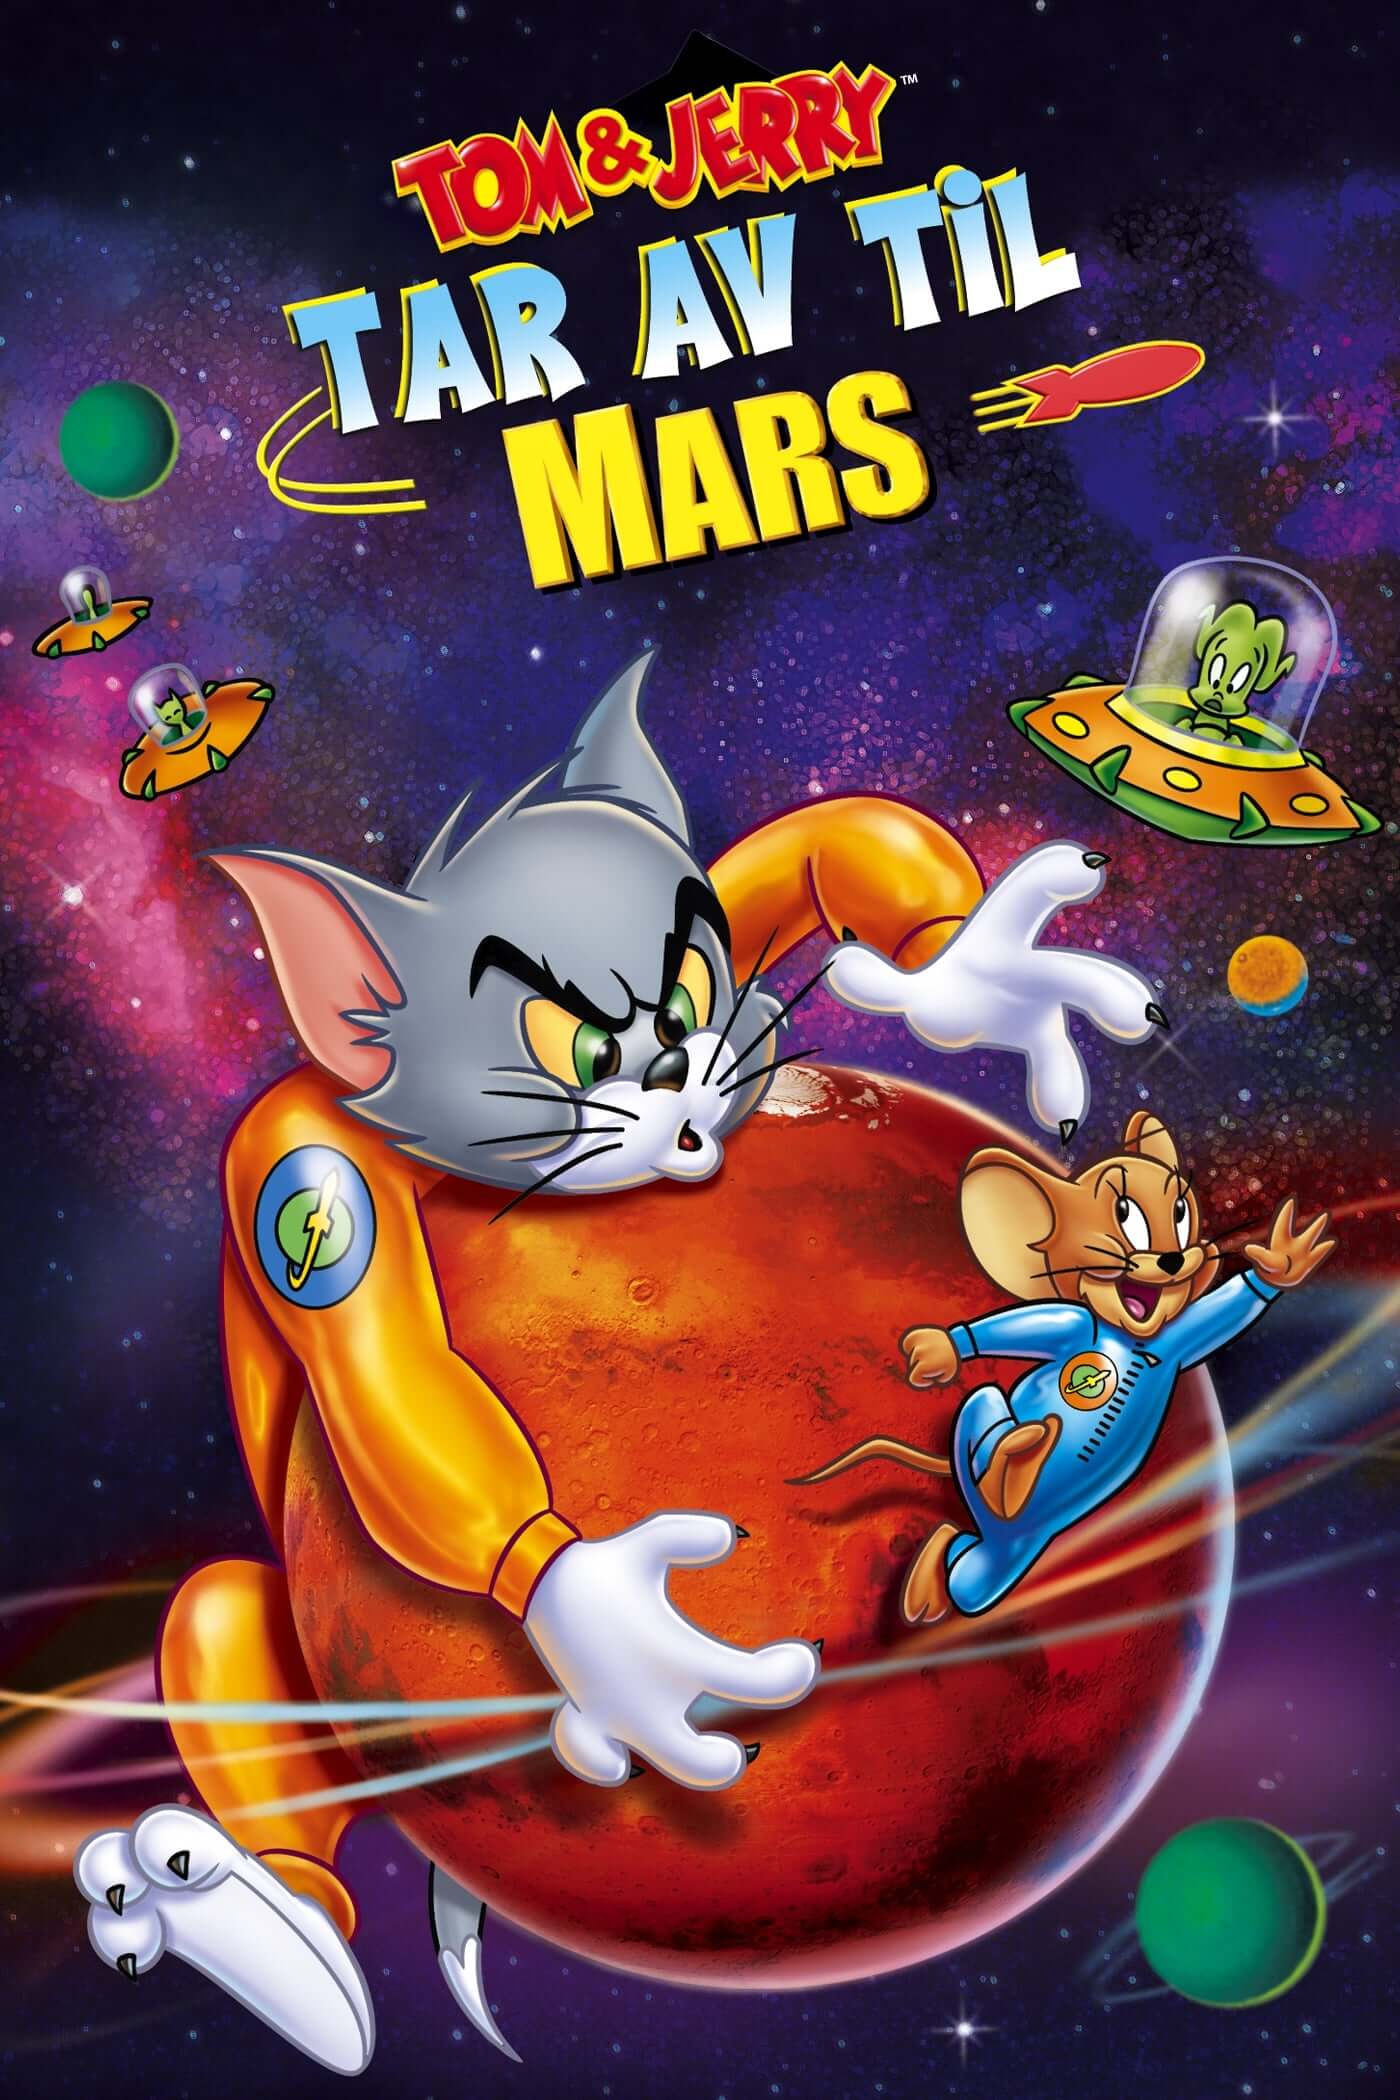 تام و جری: پرواز به سوی مریخ (Tom and Jerry Blast Off to Mars!)